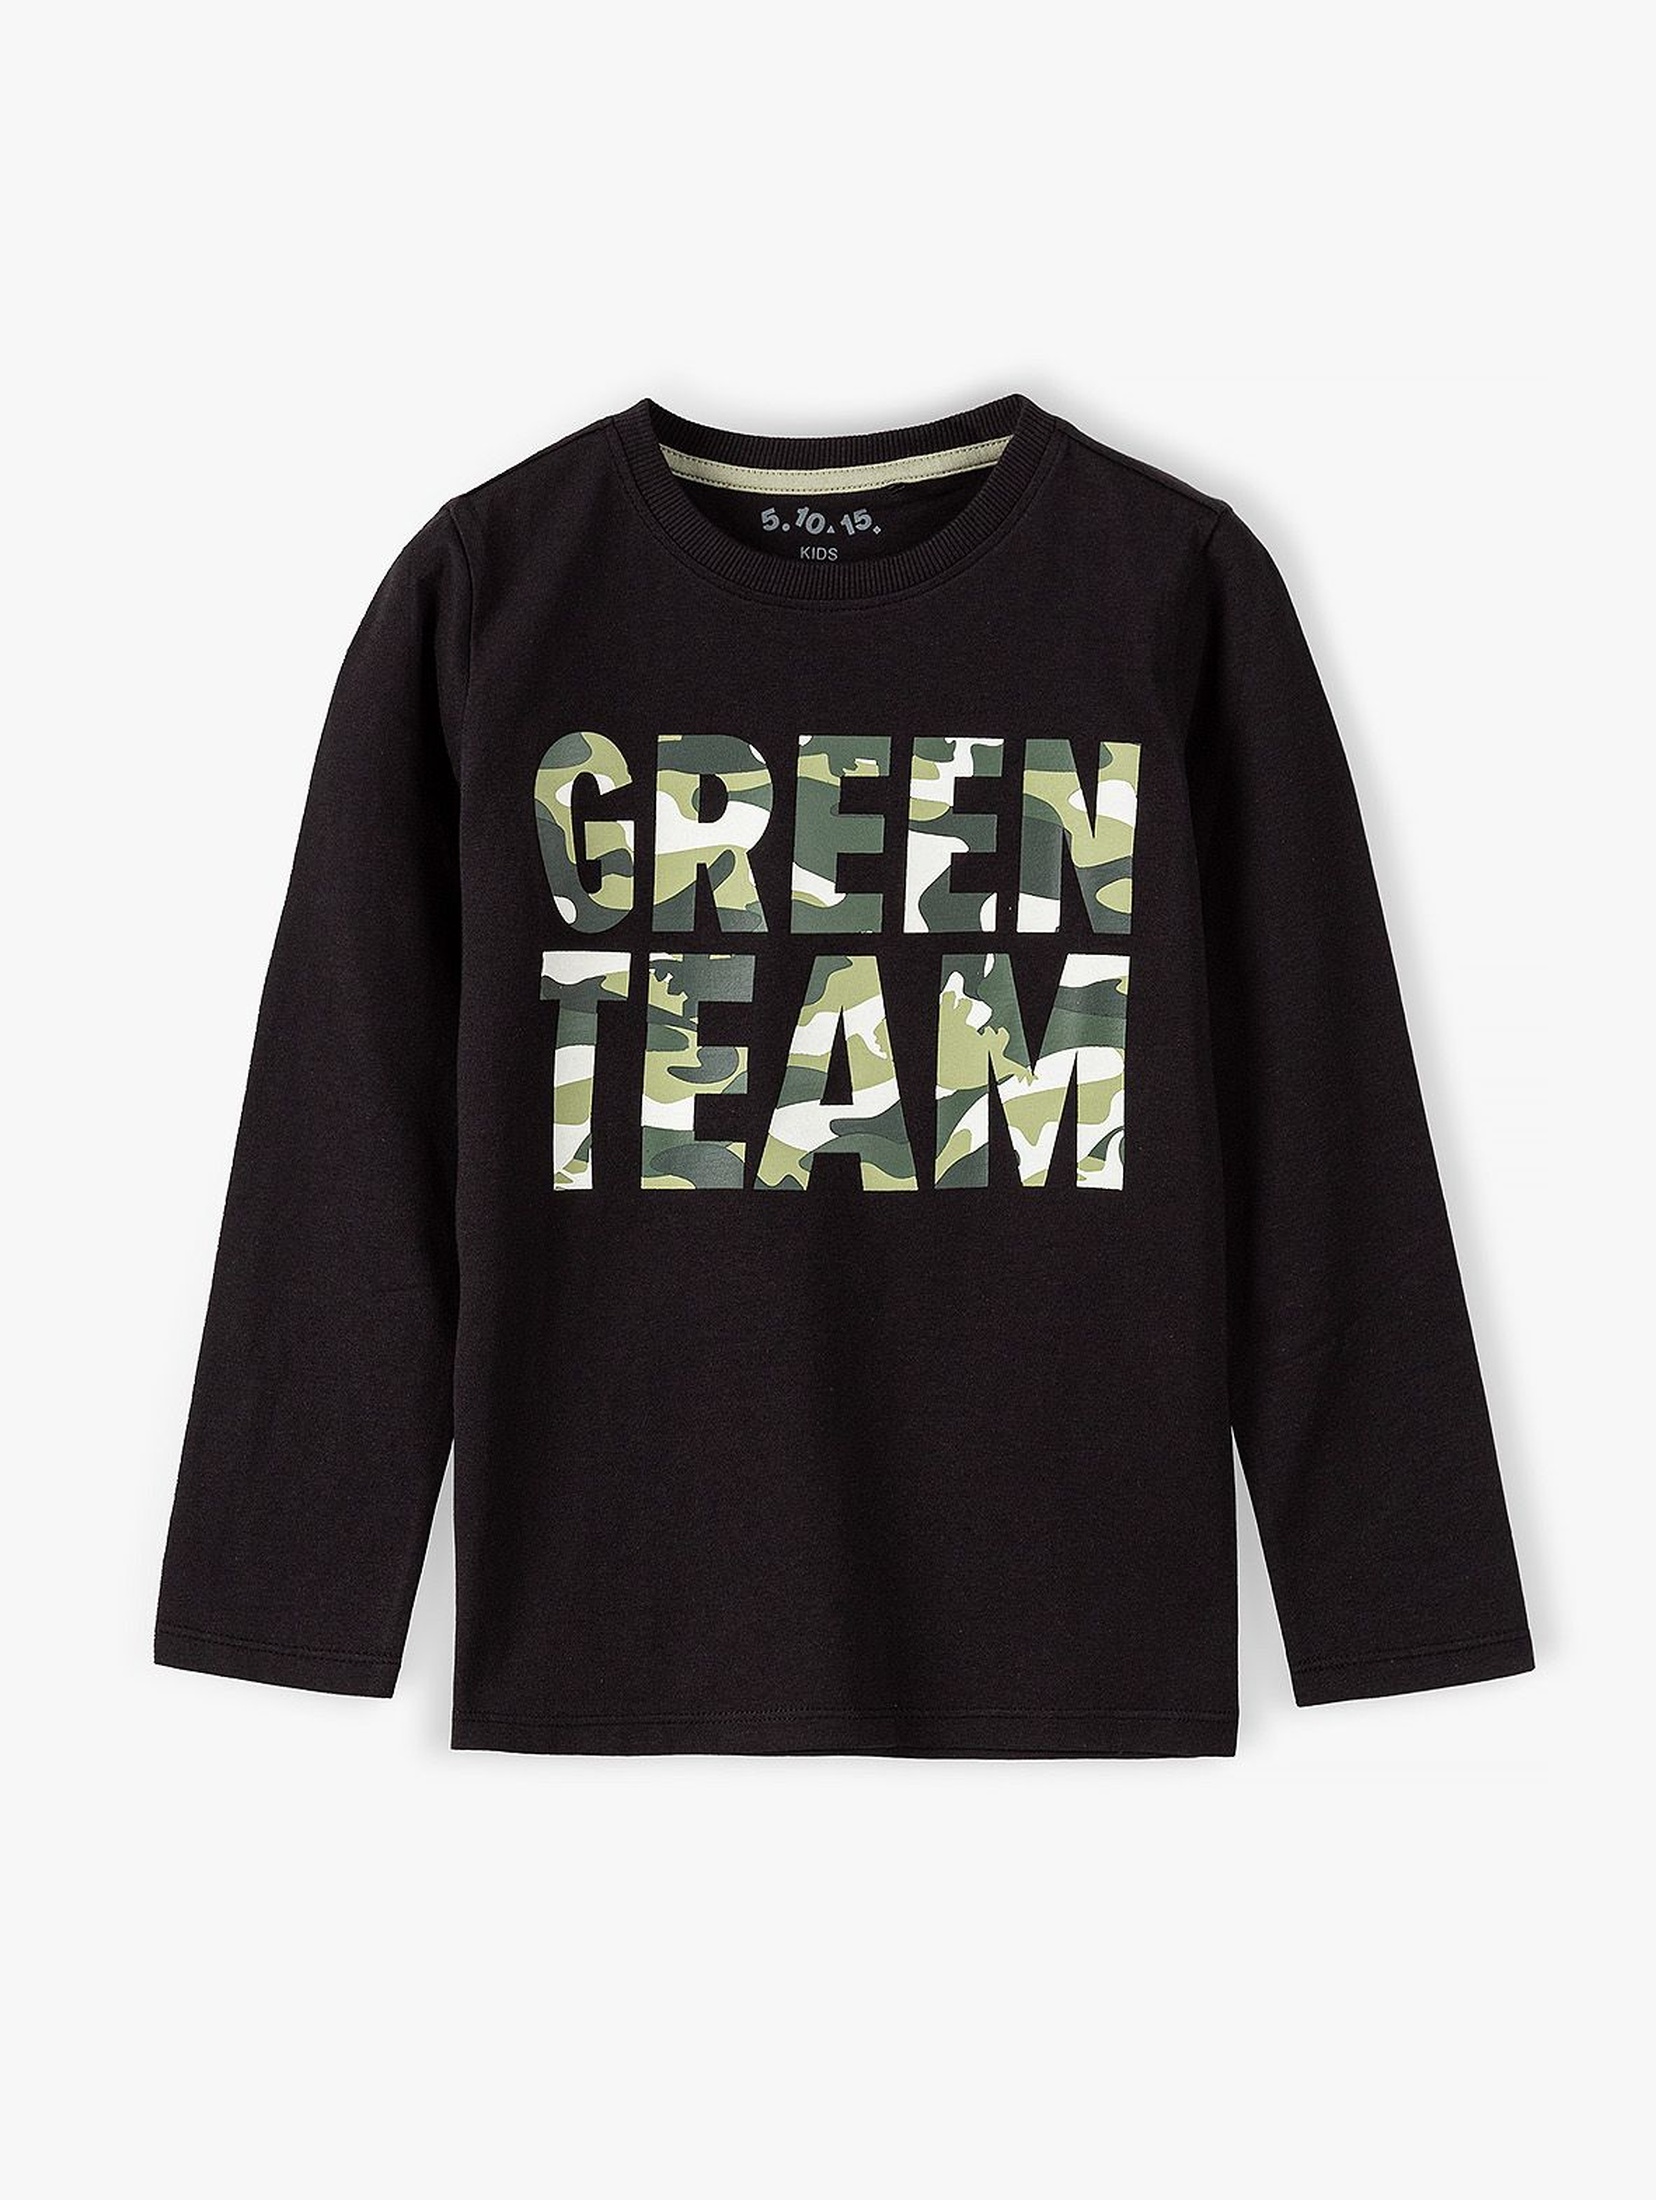 Bawełniana bluzka chłopięca czarna z napisem moro - Green Team